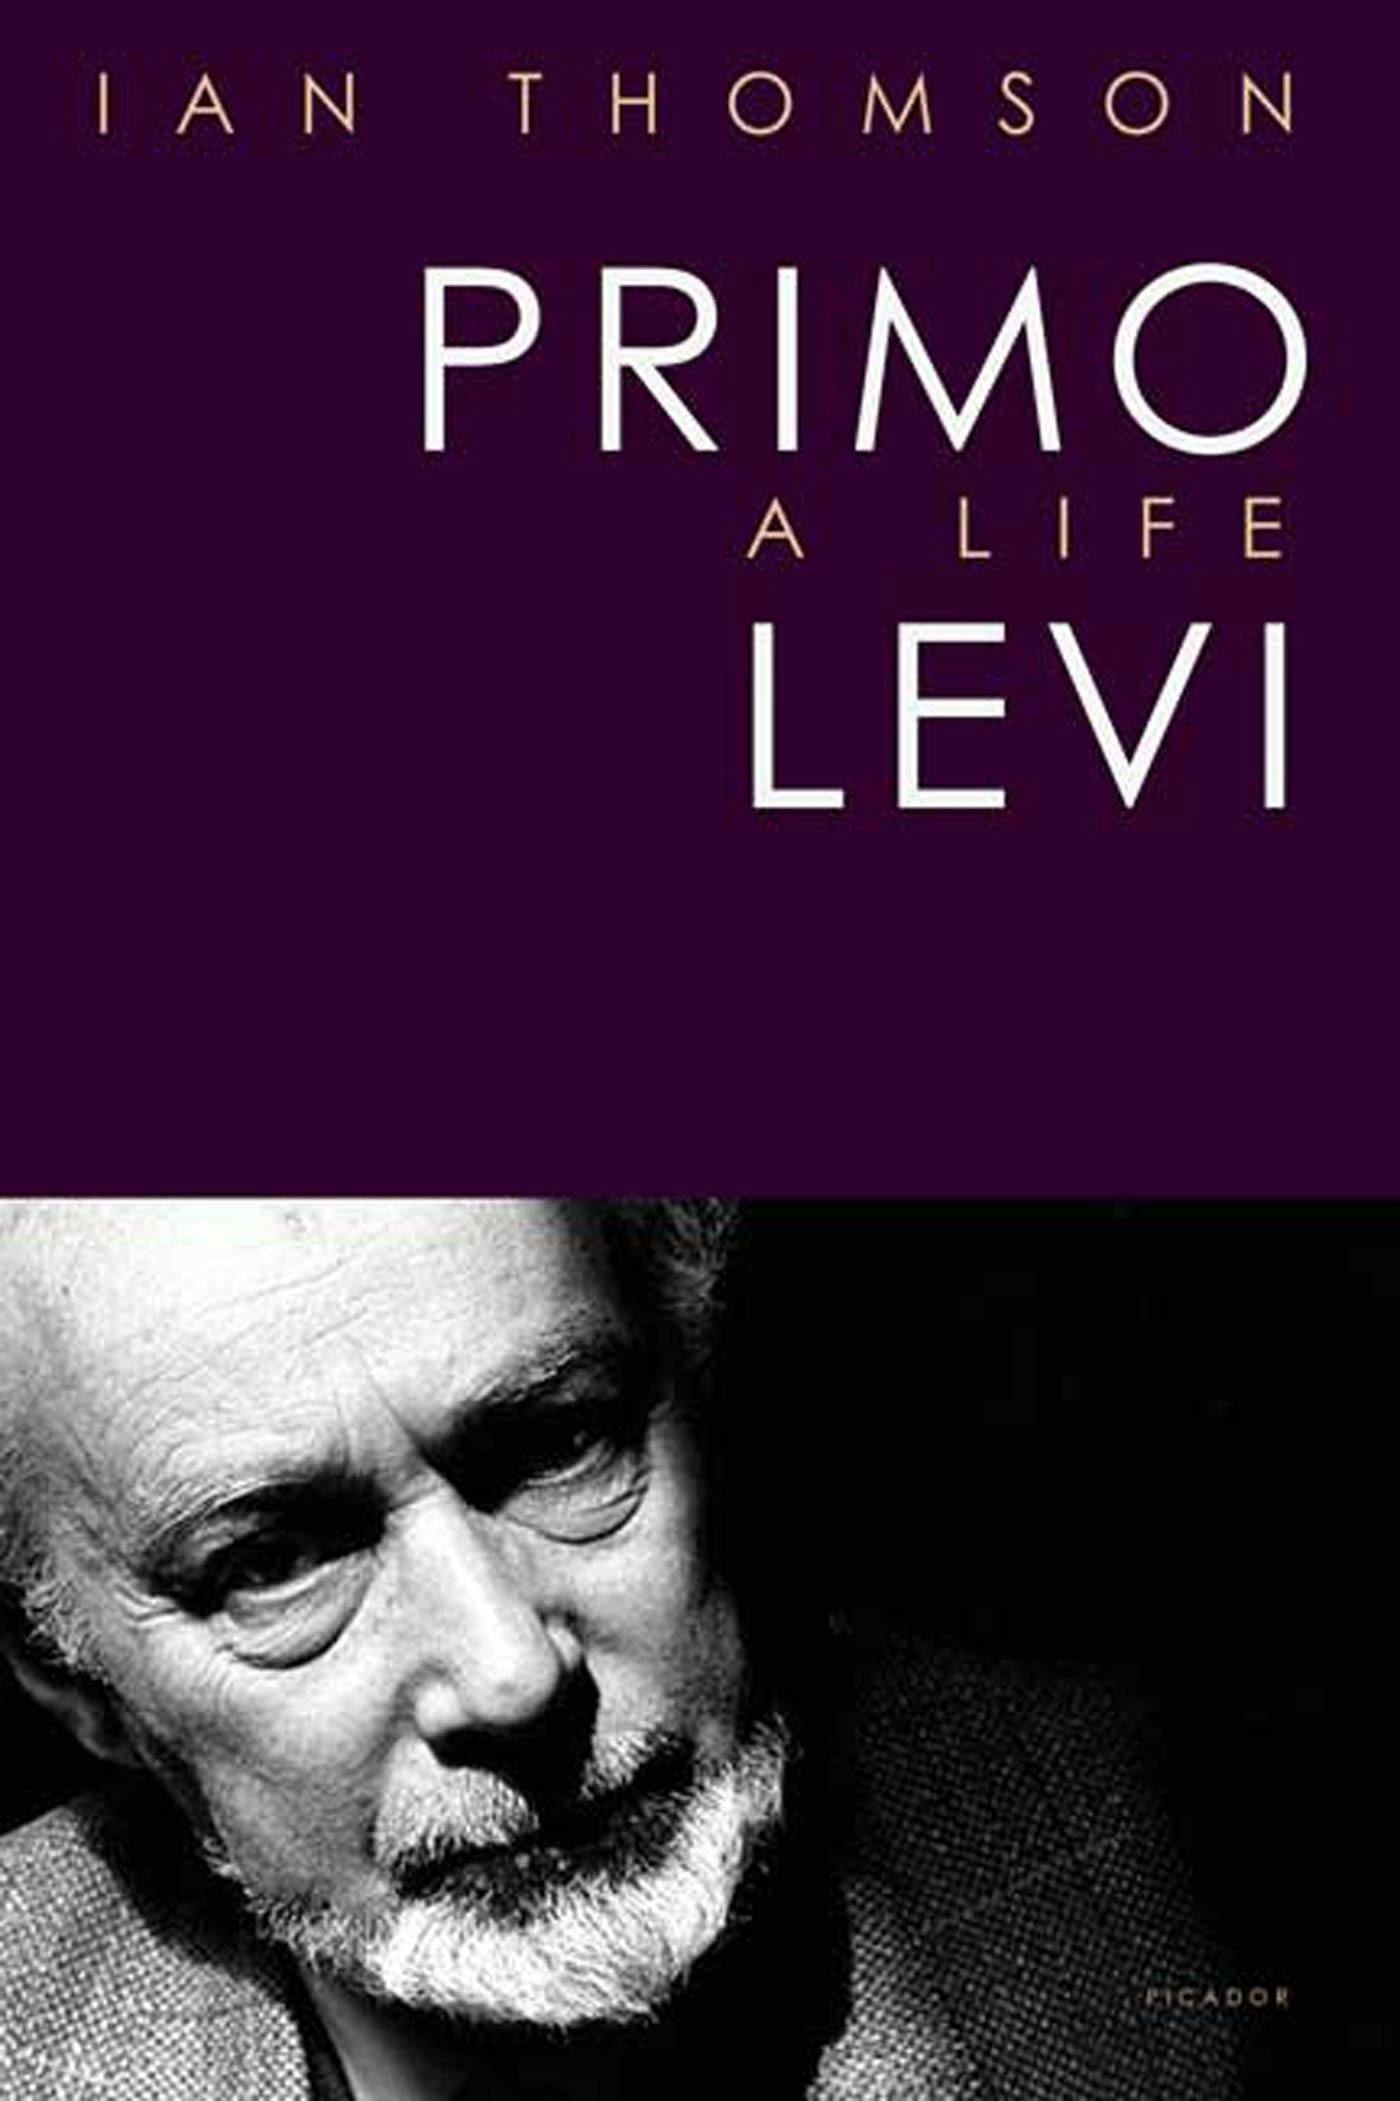 Skab foran miljøforkæmper Primo Levi